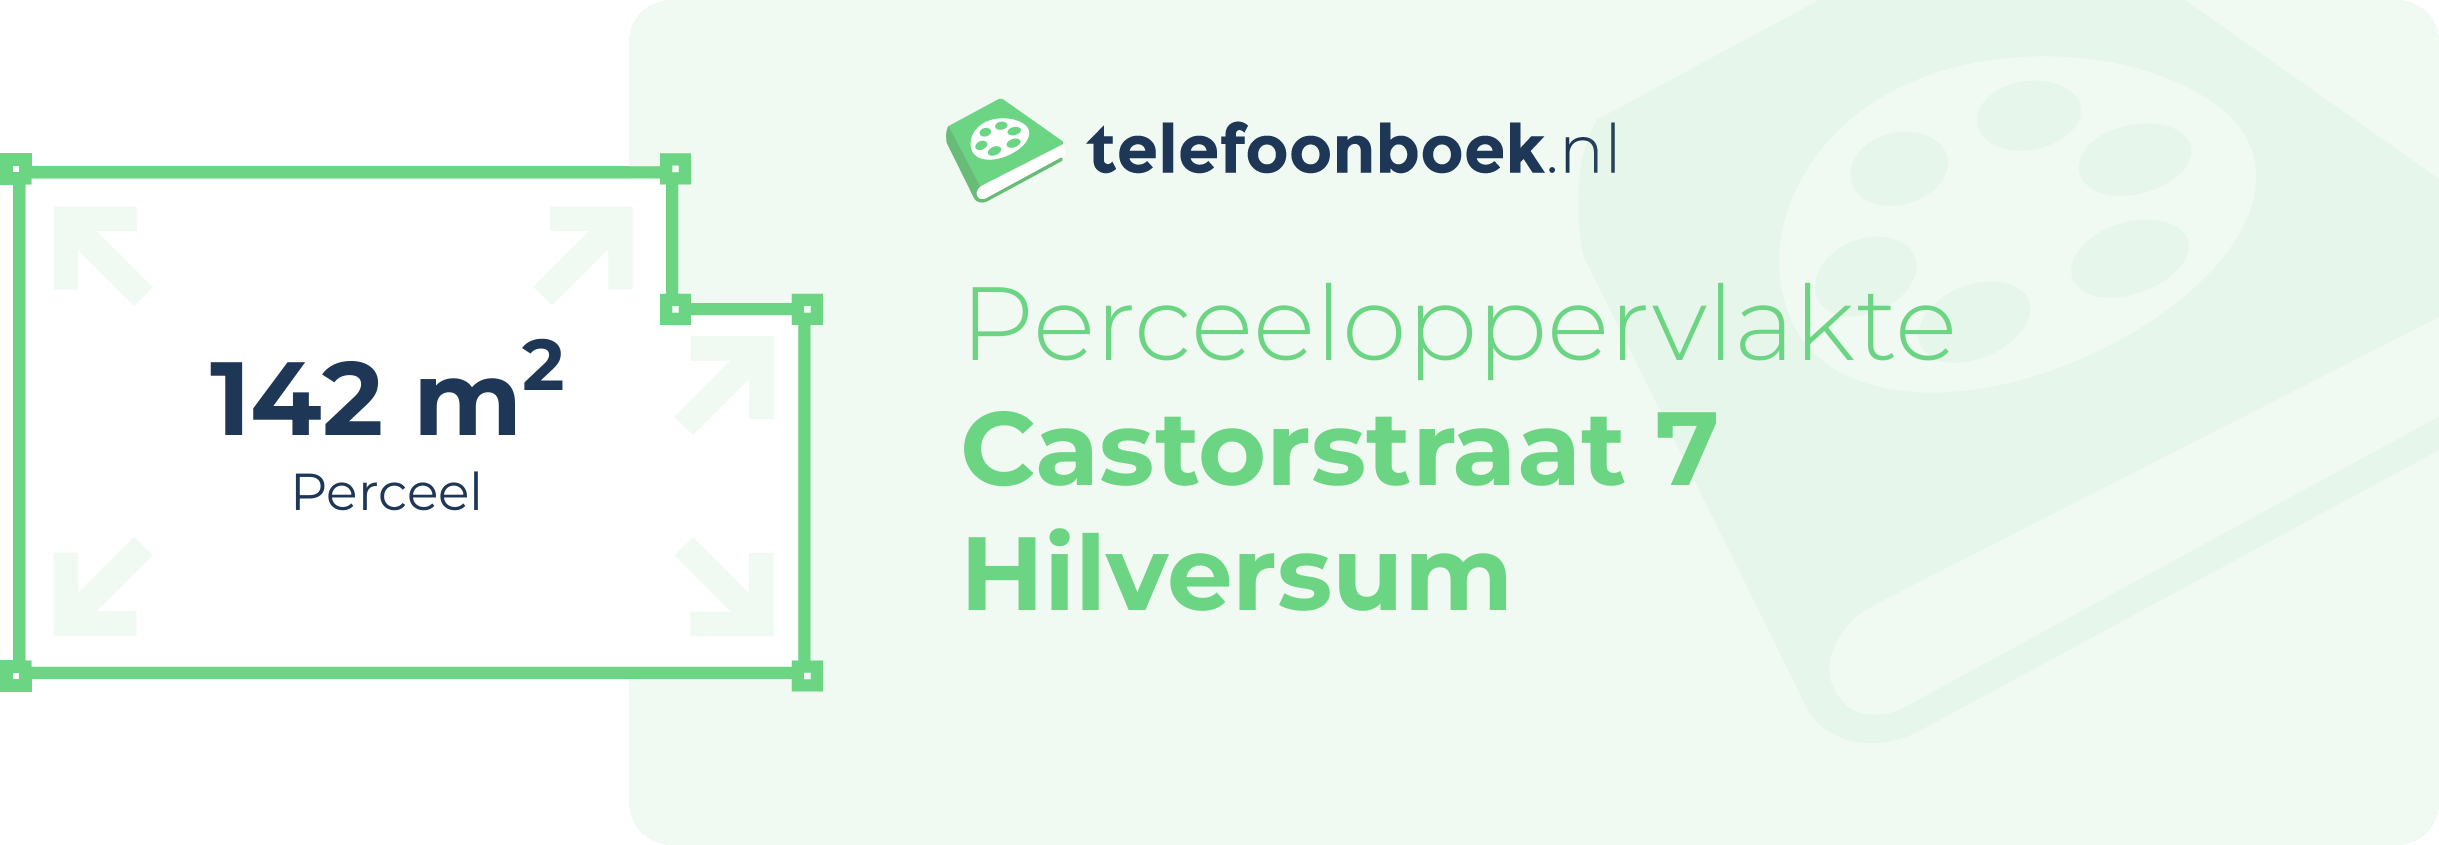 Perceeloppervlakte Castorstraat 7 Hilversum